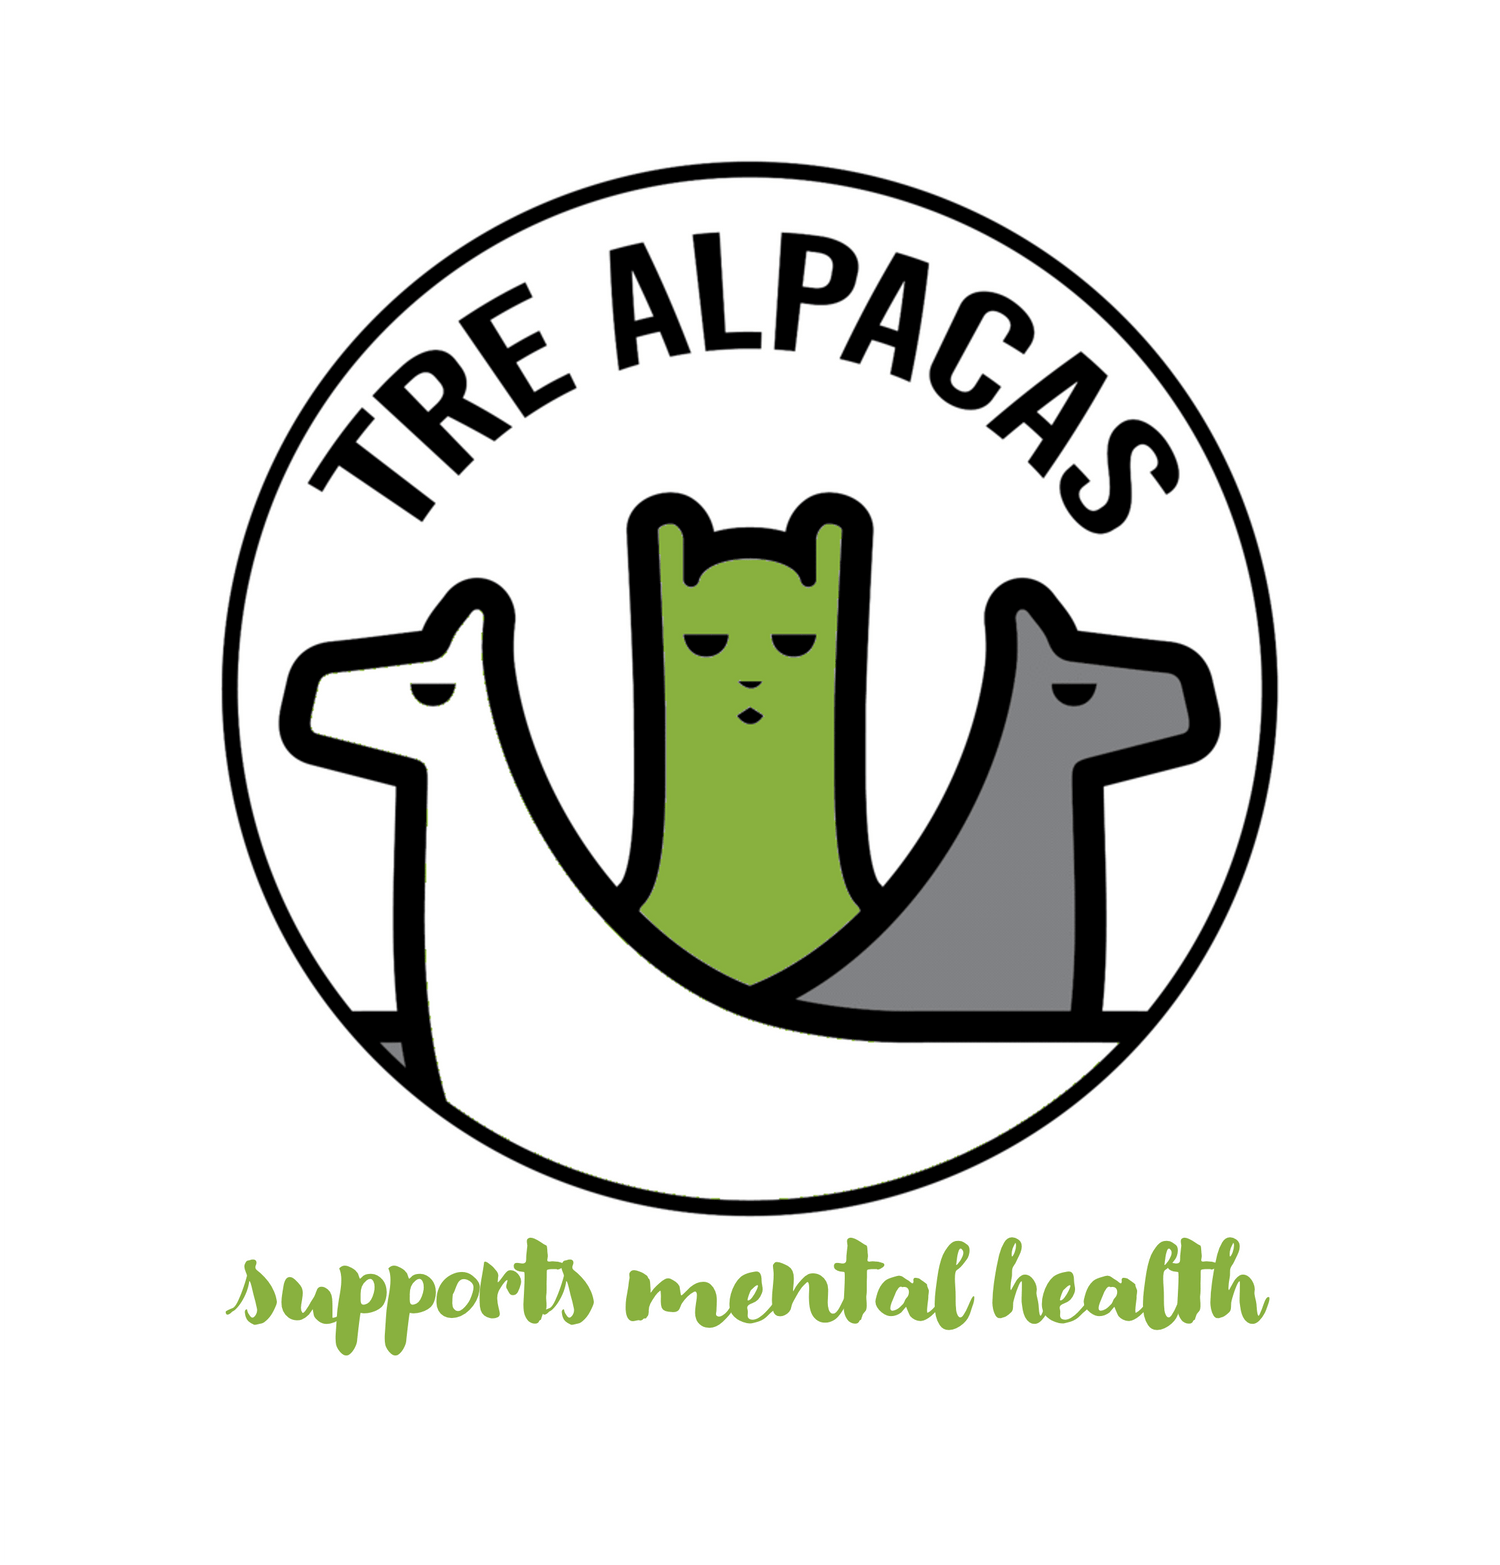 Mit unserer Alpaka Farm in Unterfranken unterstützen wir Mental Health Projekte